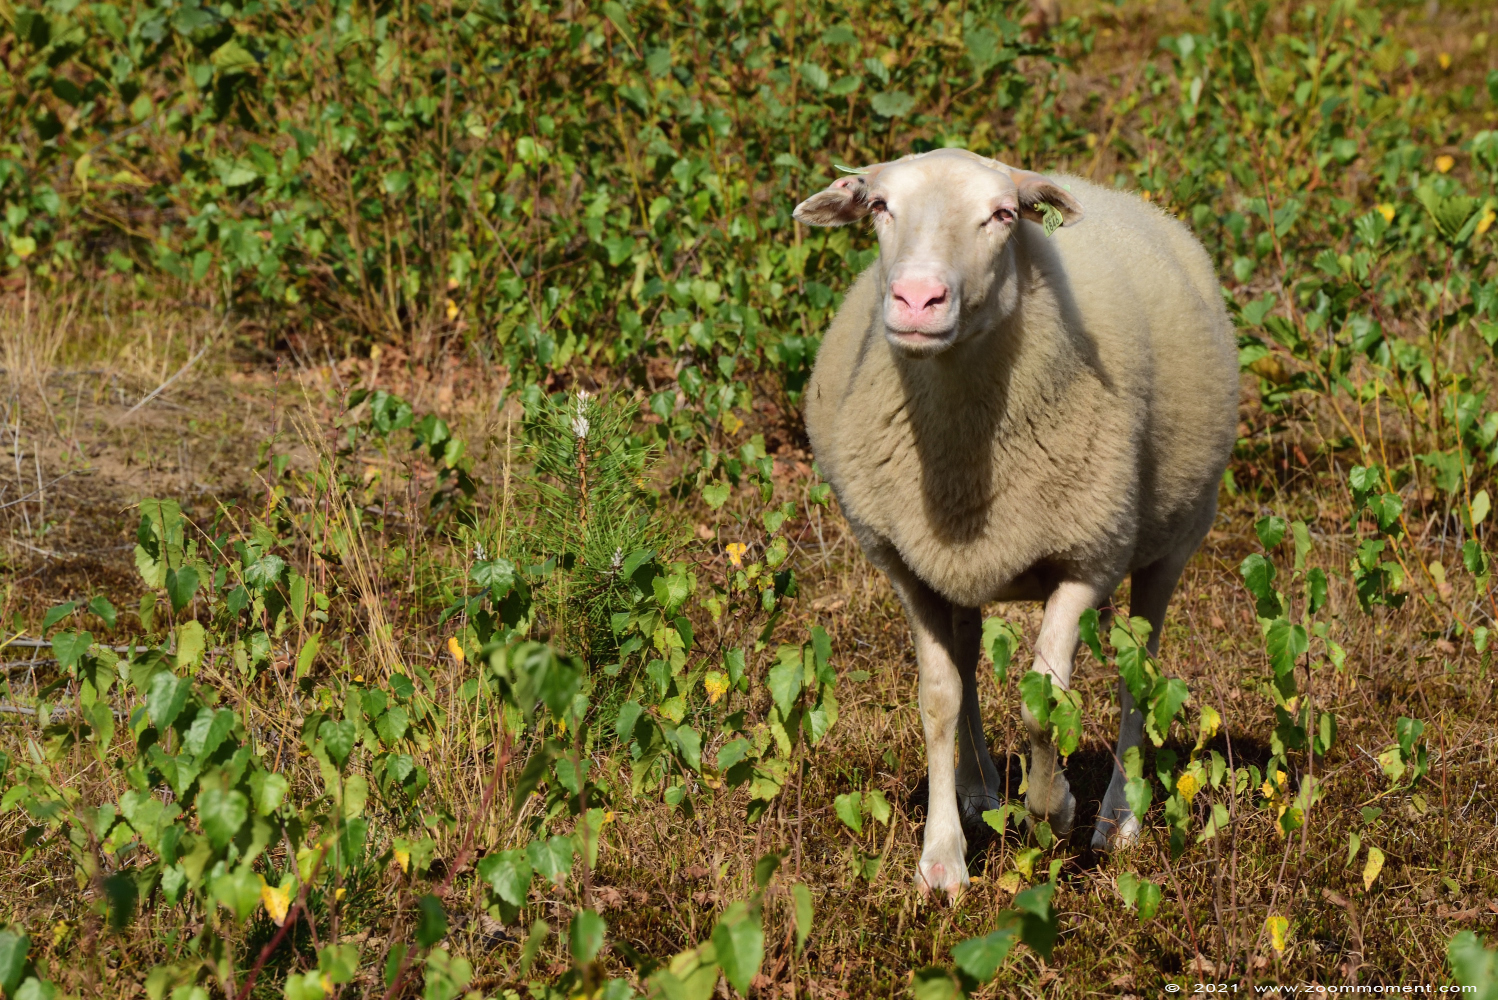 schaap sheep
Palavras chave: Eksterheide schaap sheep